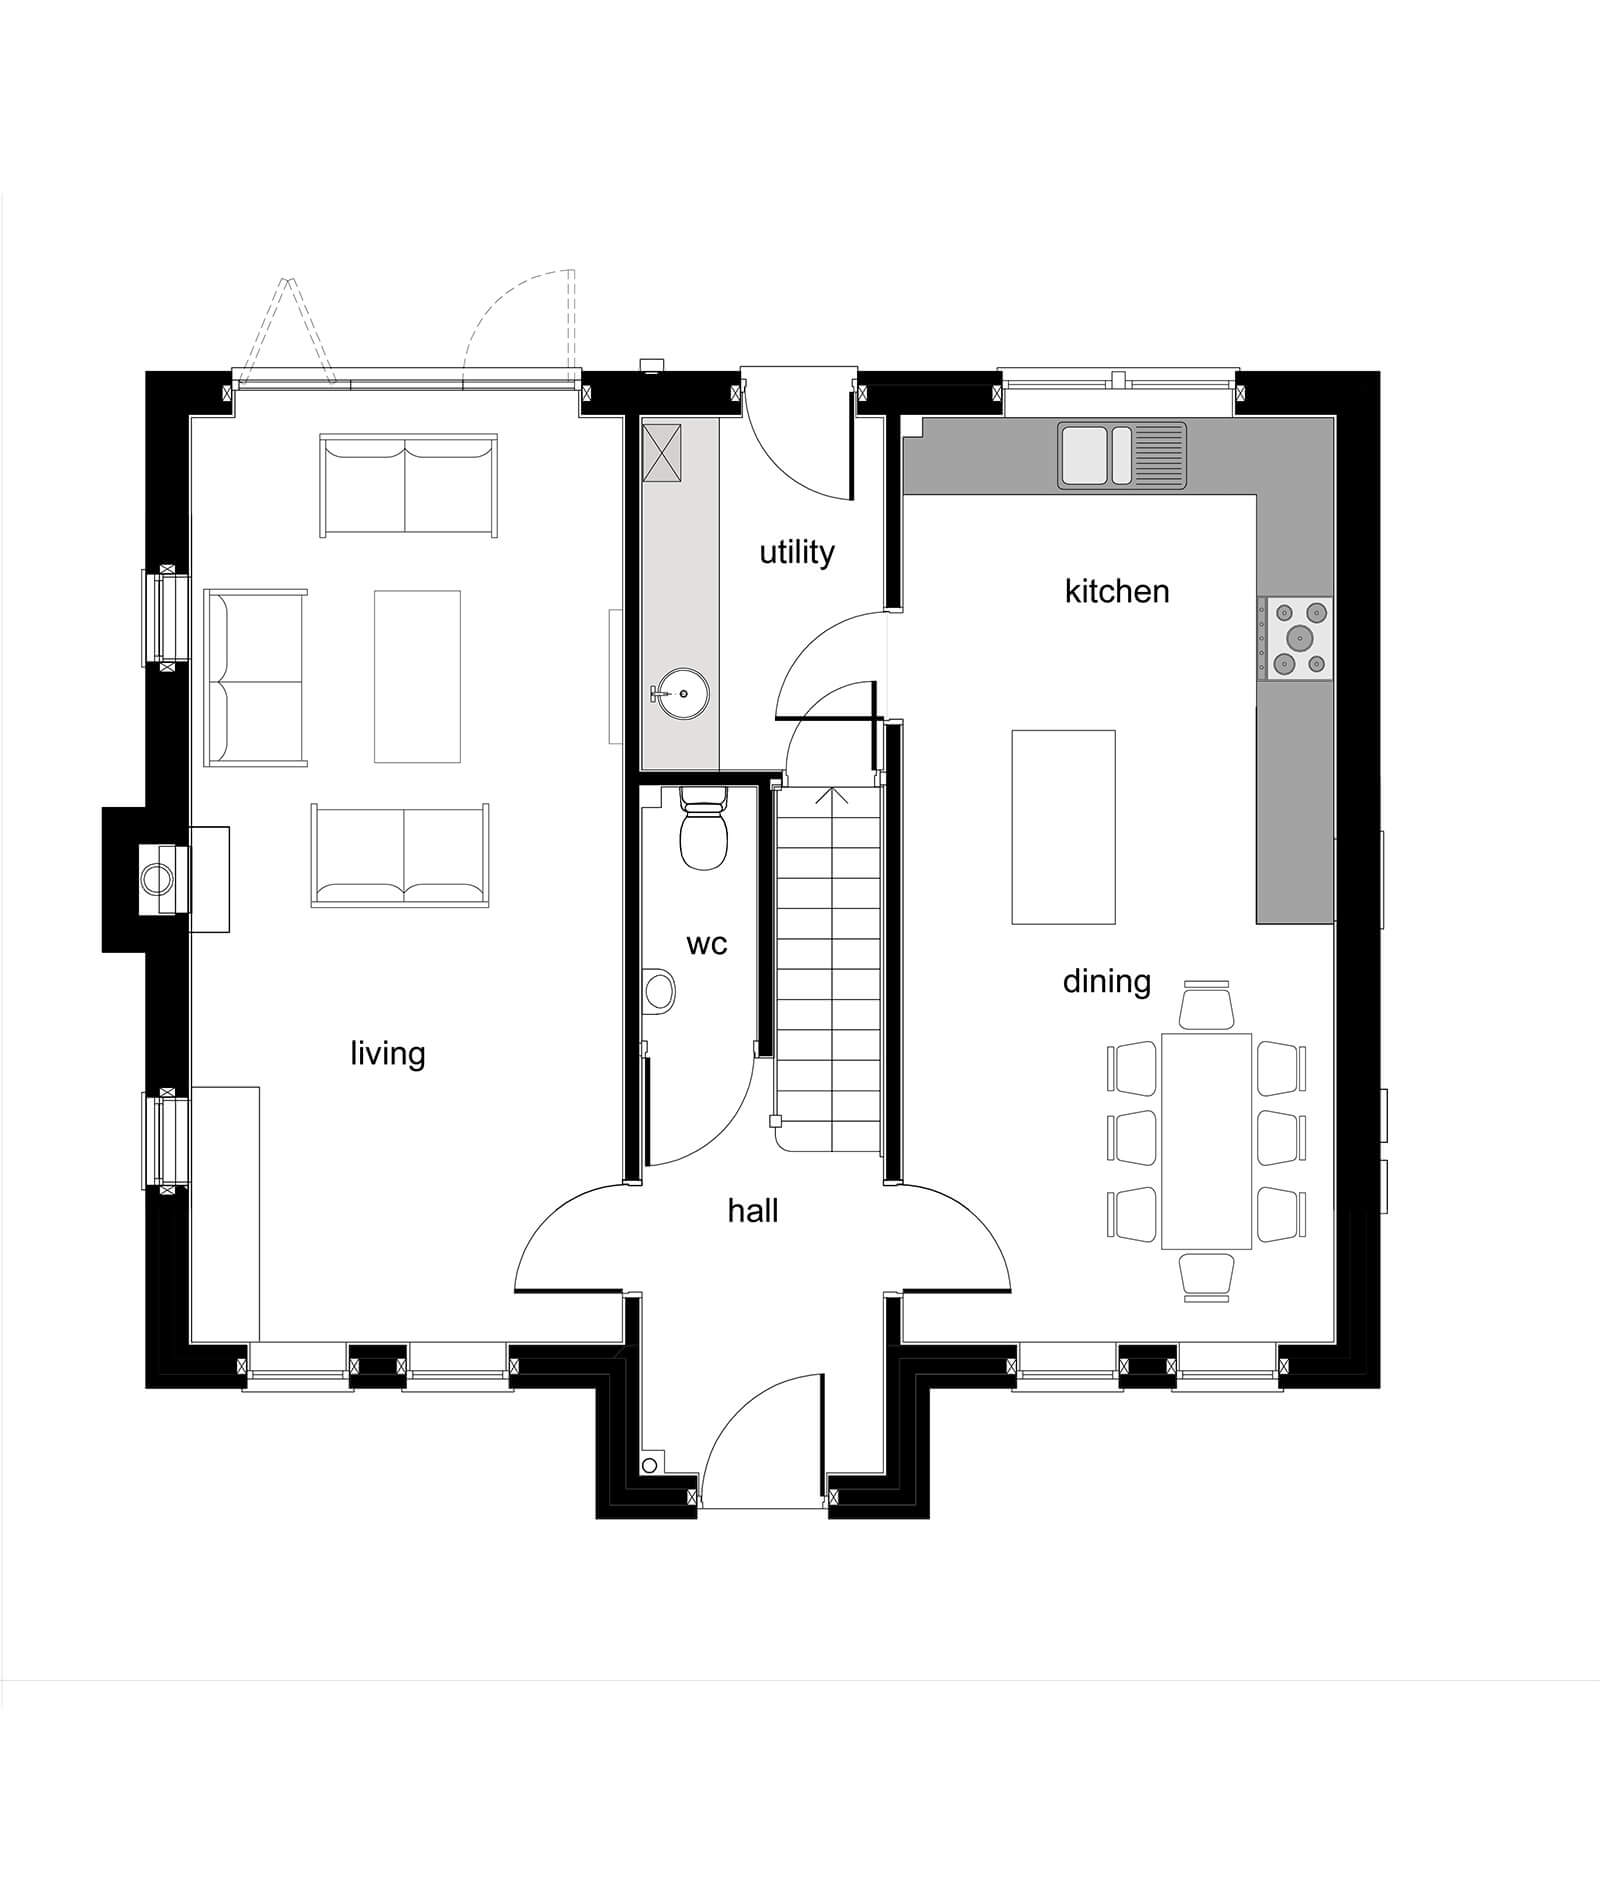 Grange House - Plot 4-6 - Ground Floor